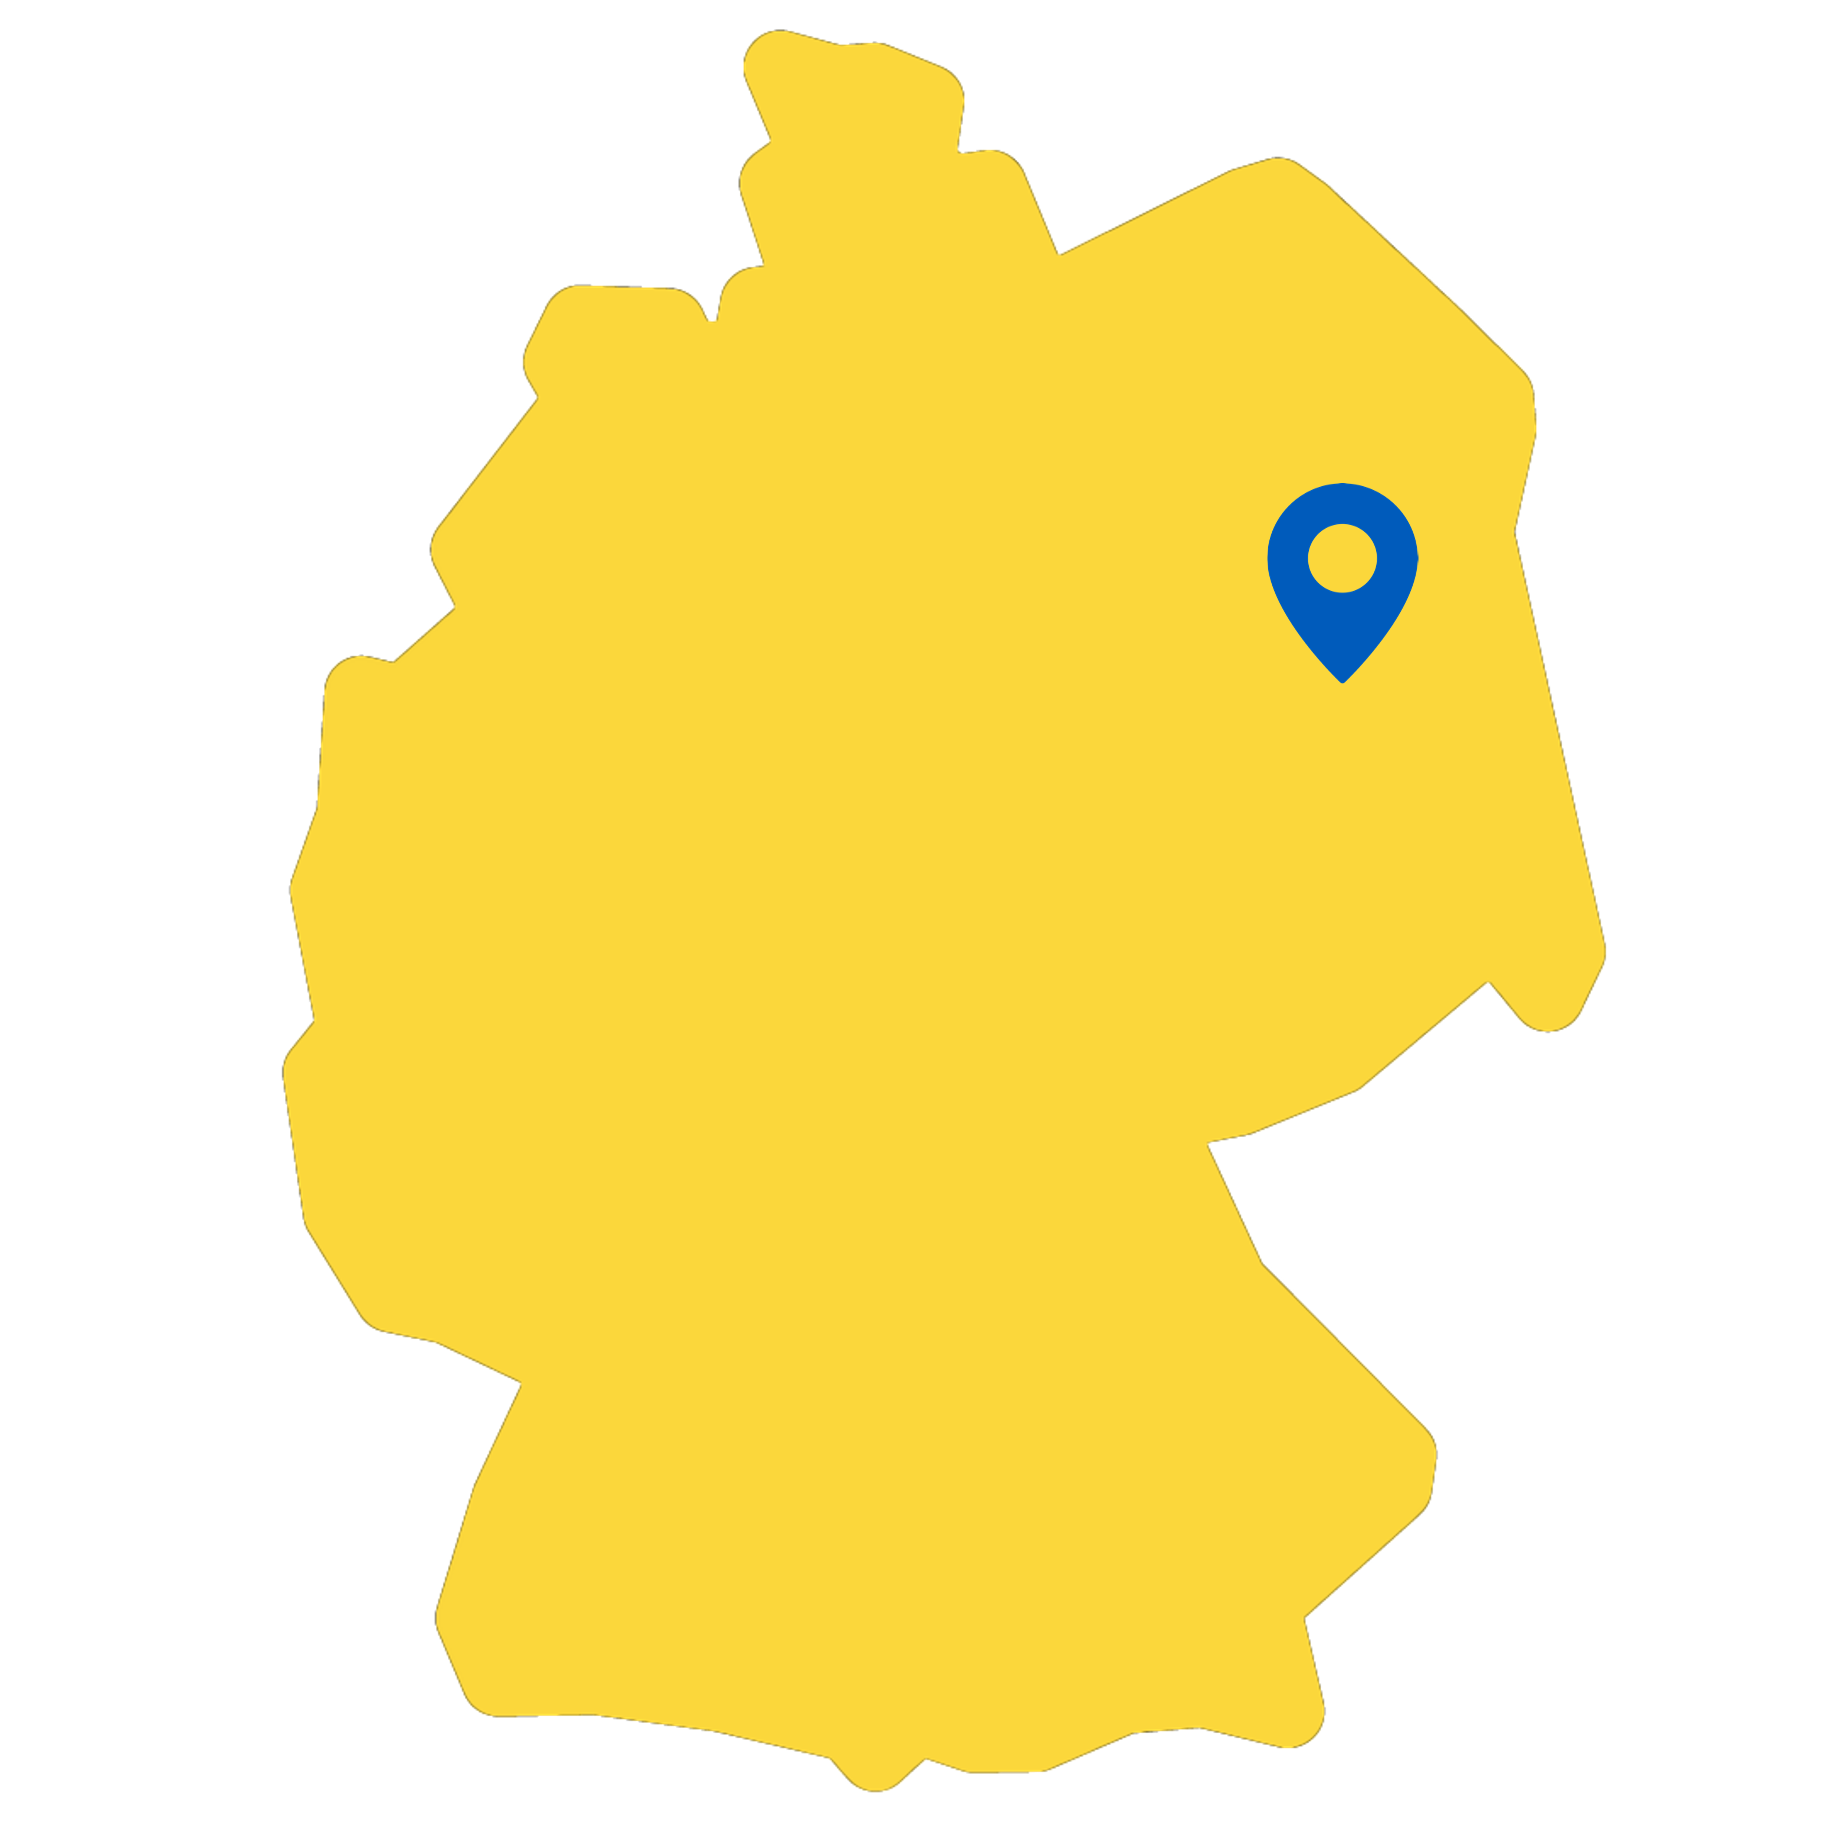 Berlin makiert auf Ukraine-Karte